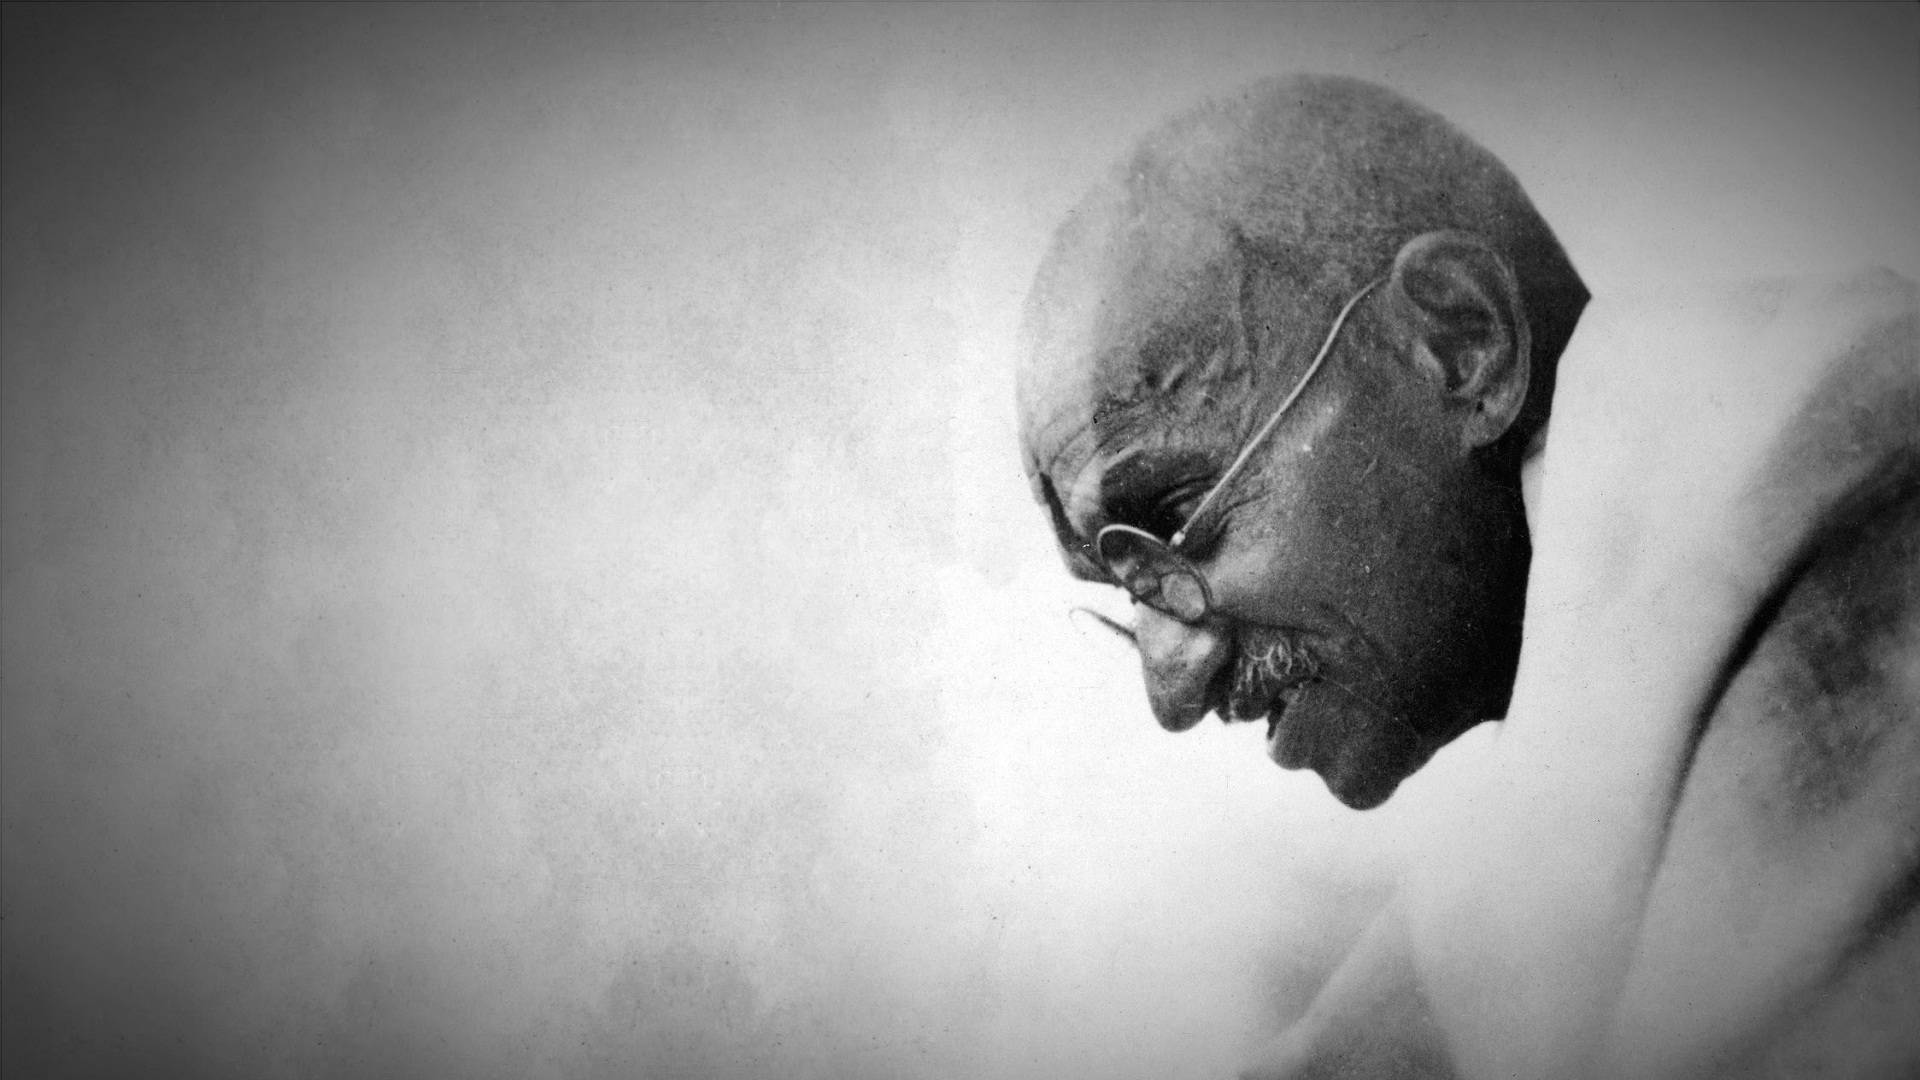 The Enlightened Peacemaker - Mahatma Gandhi